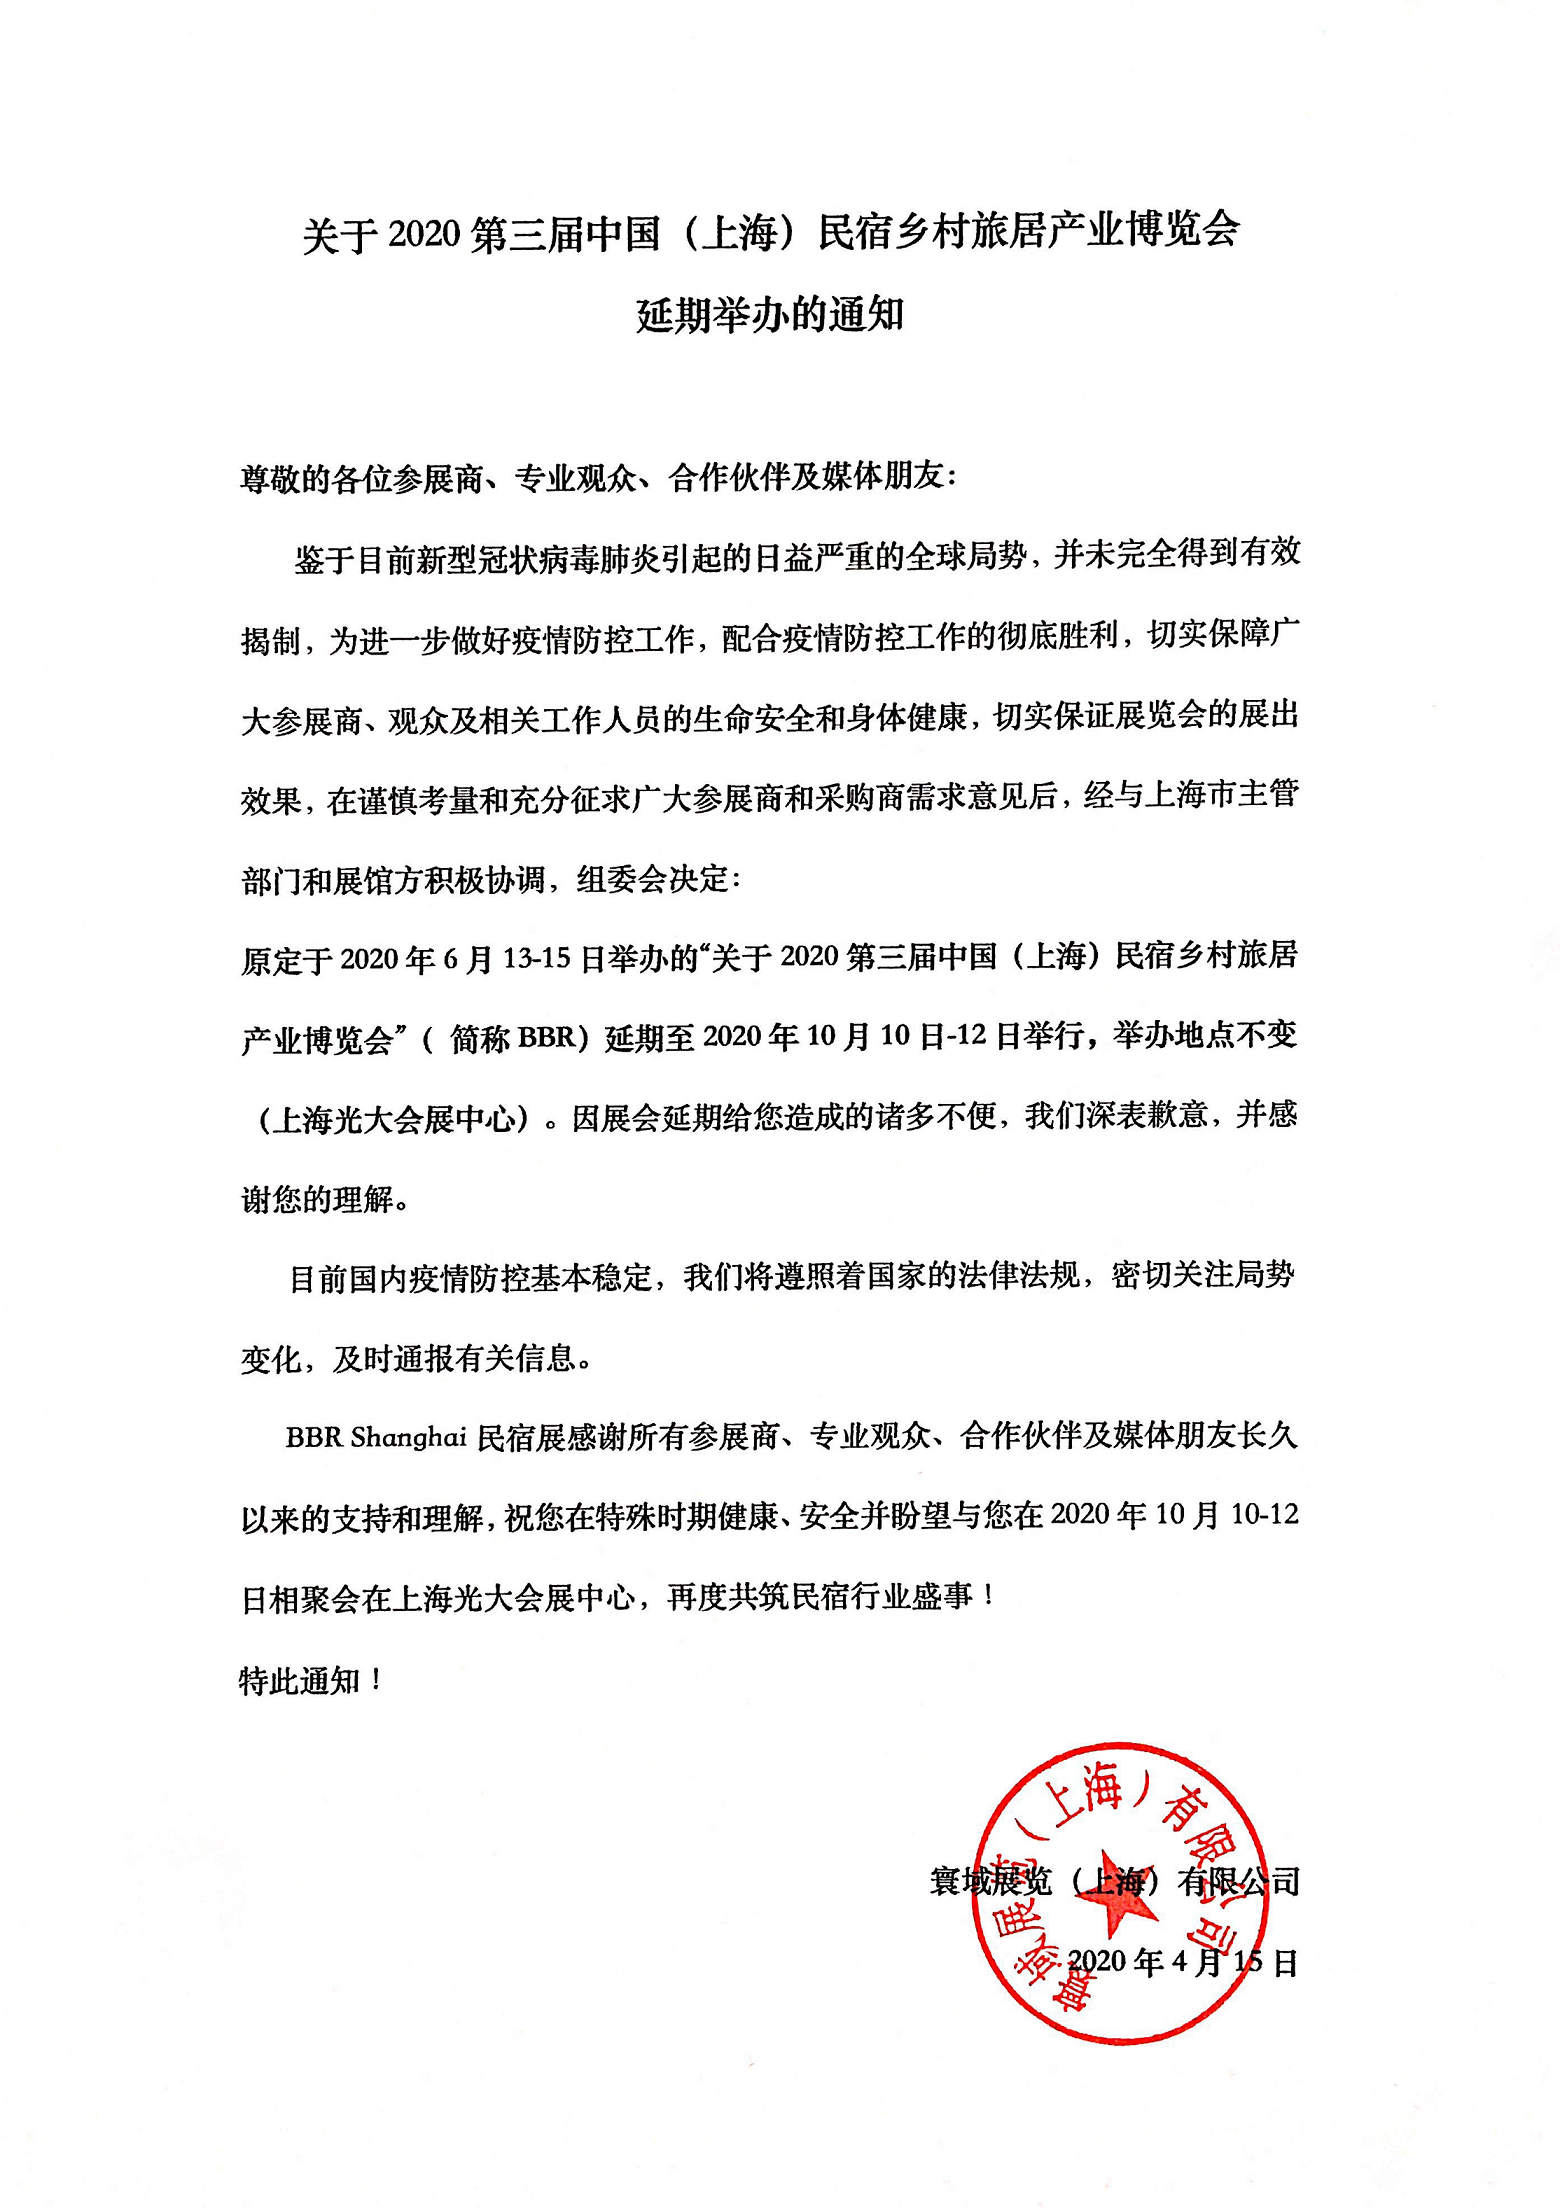 2020年第三届上海国际民宿及乡村旅居产业博览会延期通知.png